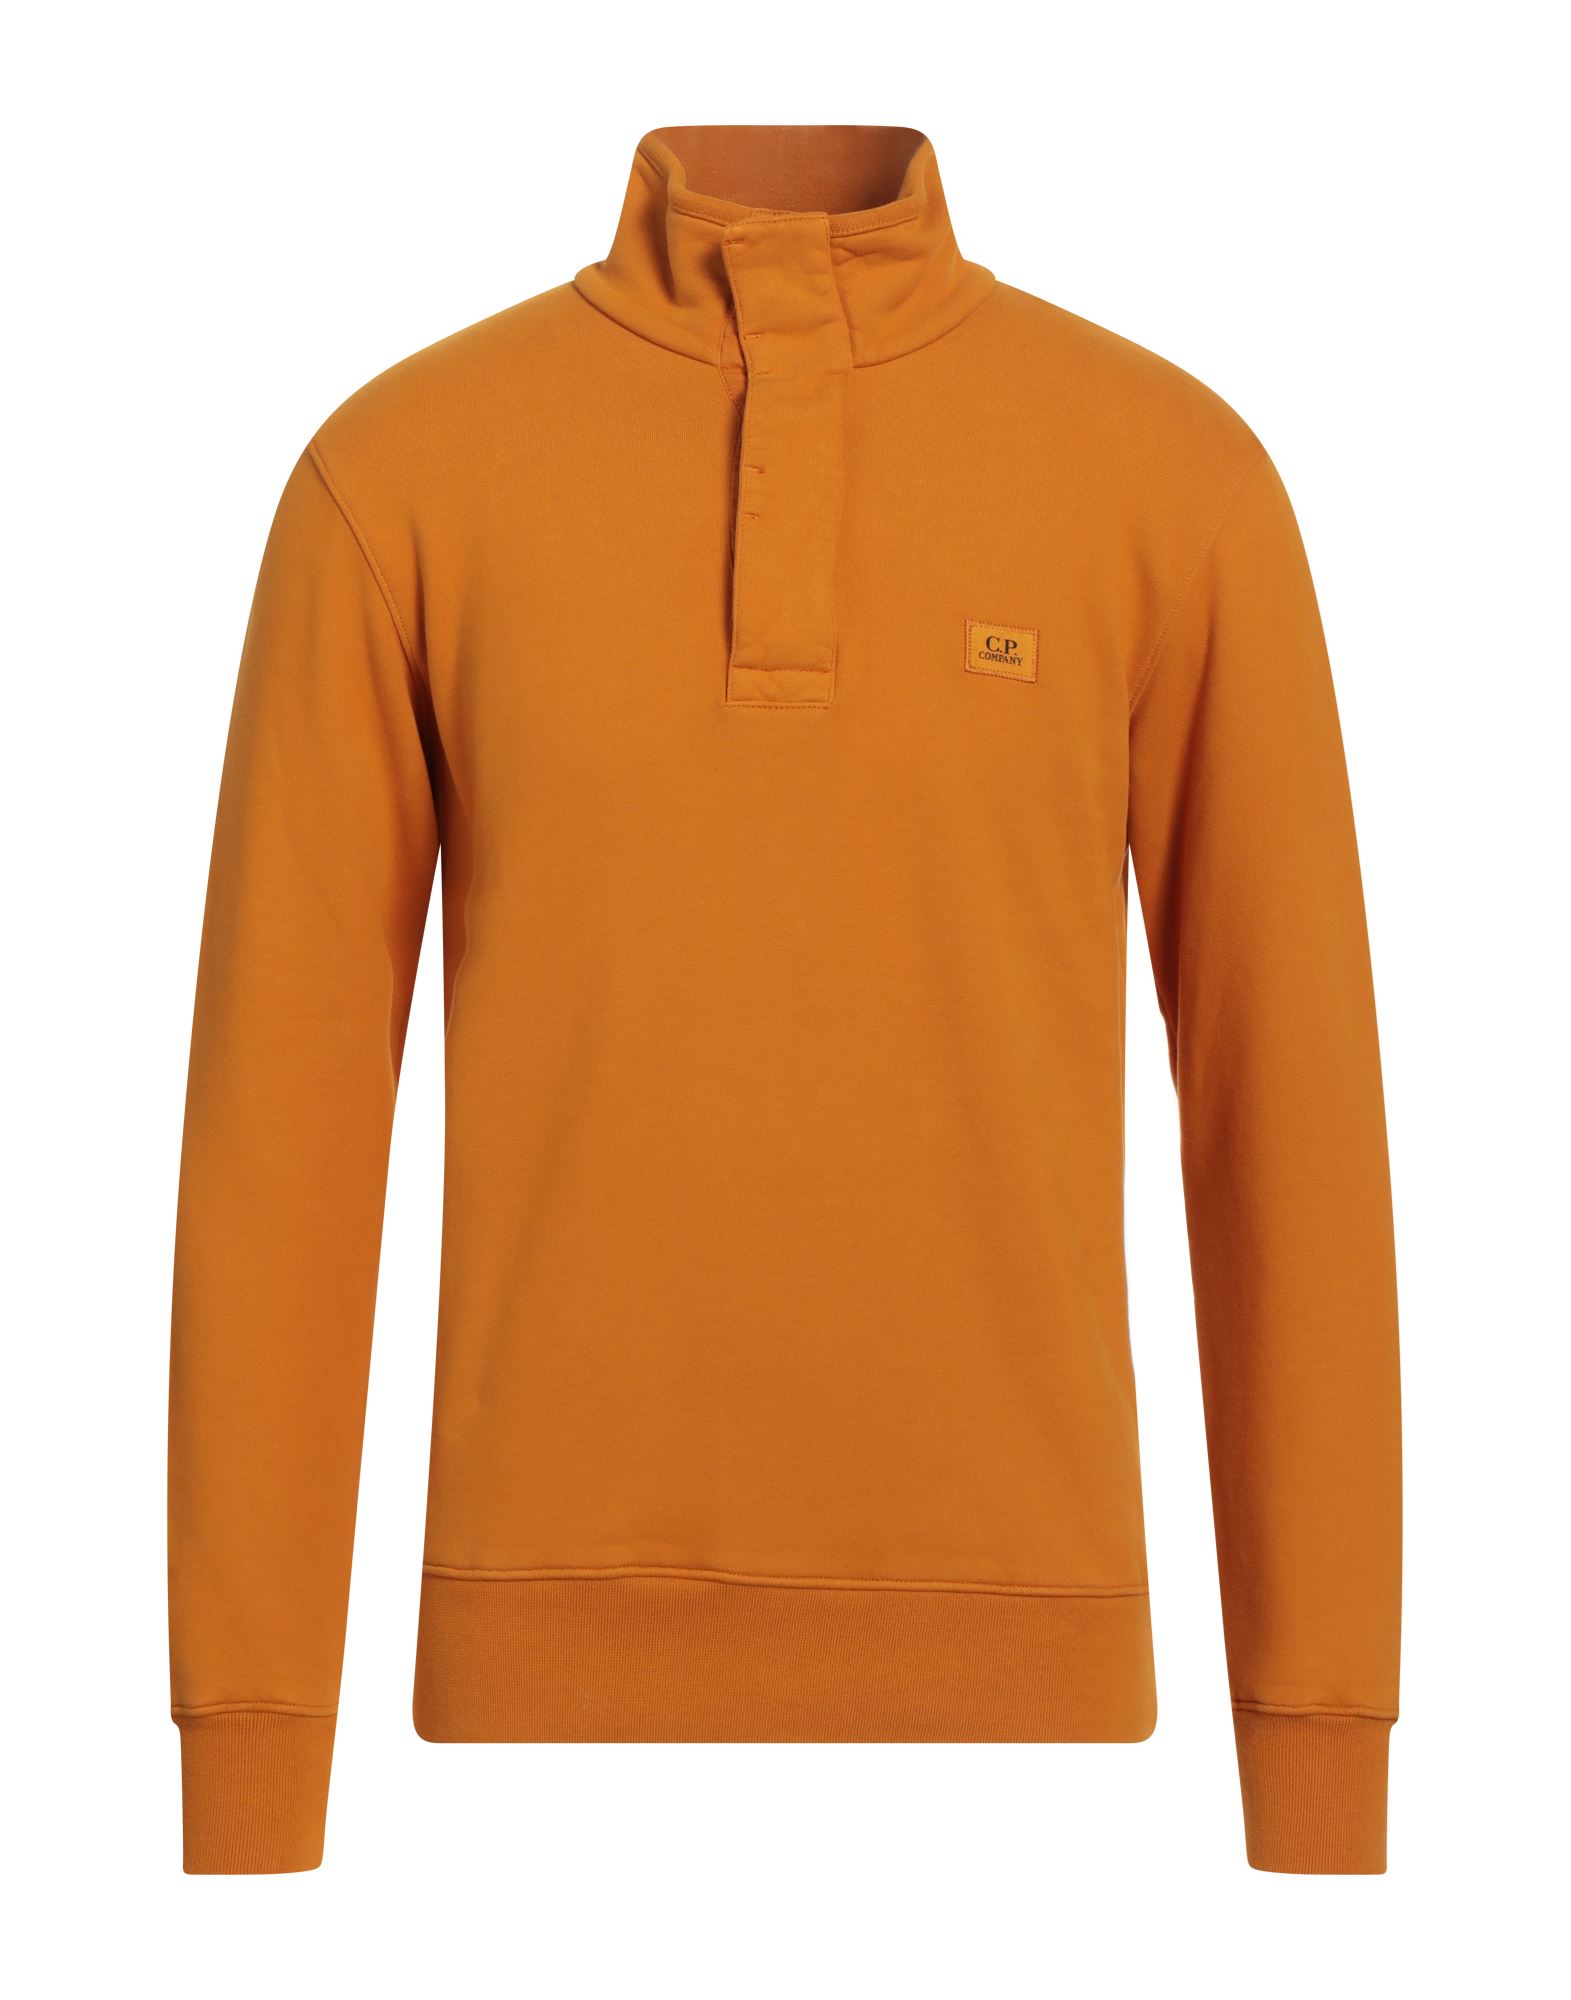 C.P. COMPANY Sweatshirt Herren Orange von C.P. COMPANY